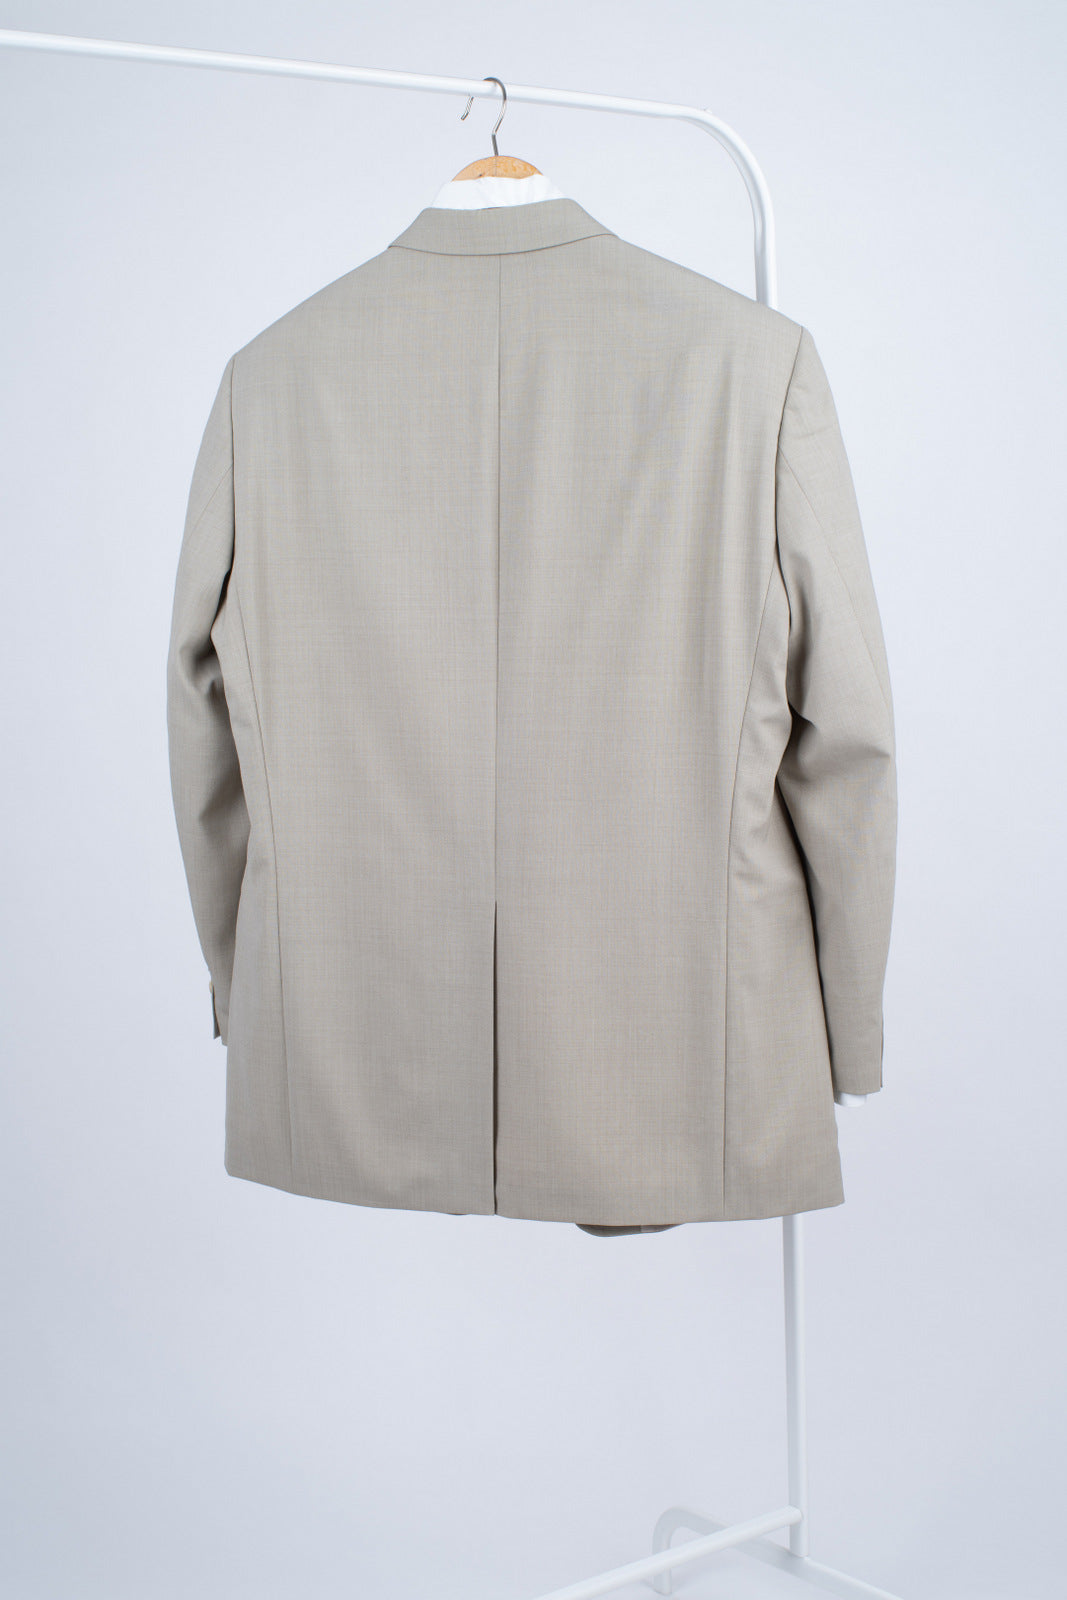 Hugo Boss Lightweight Wool Blazer Jacket, US 44, EU 54